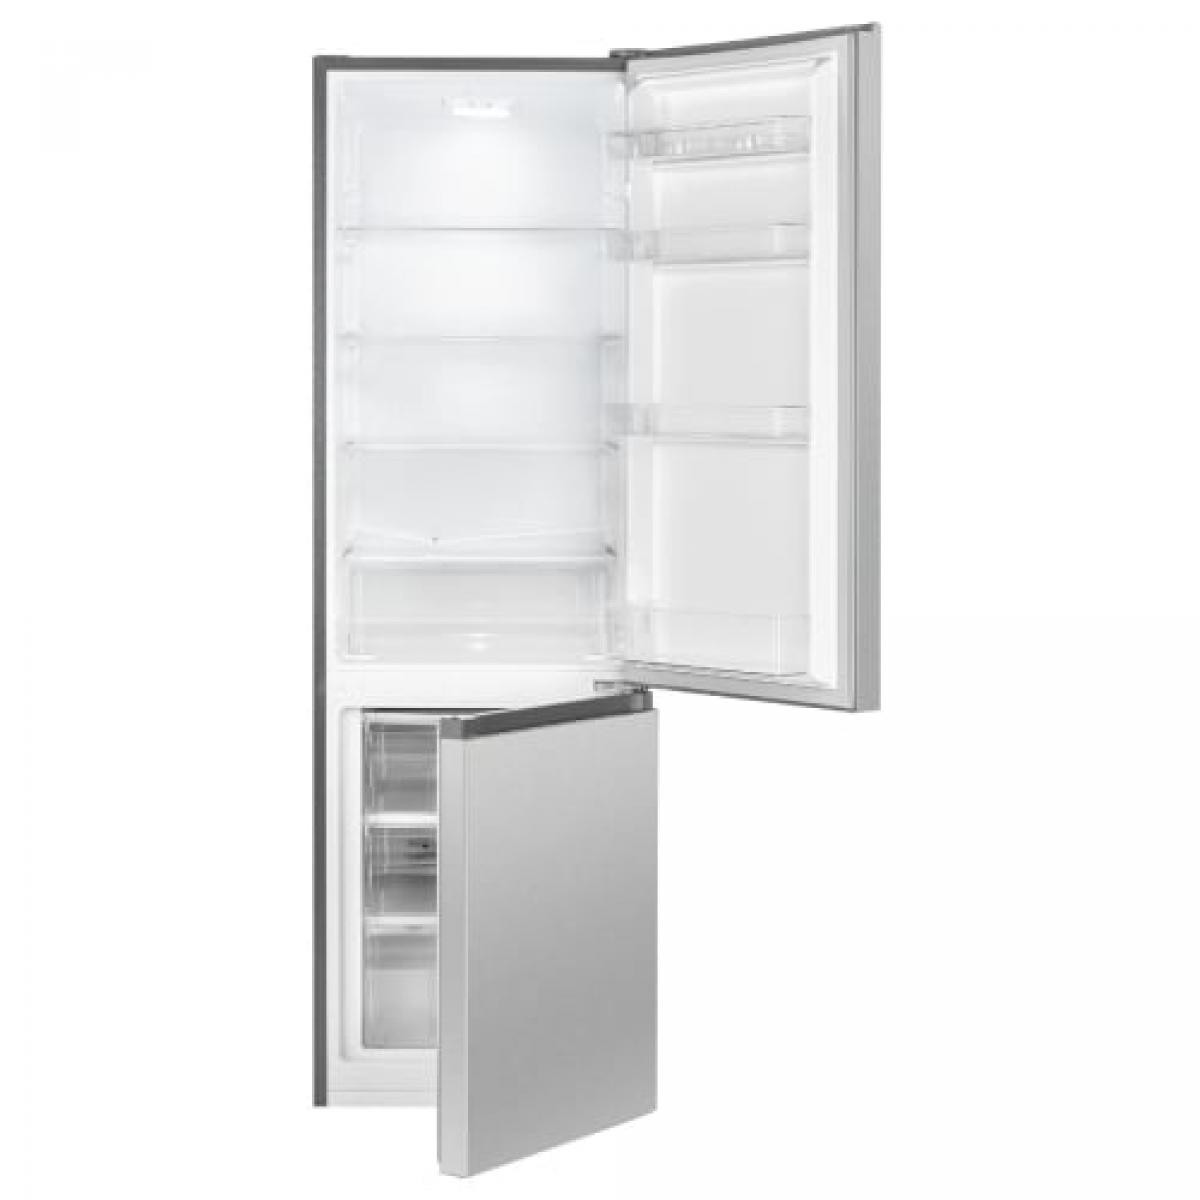 Réfrigérateur et congélateur 269L inox Bomann KG184-1-inox